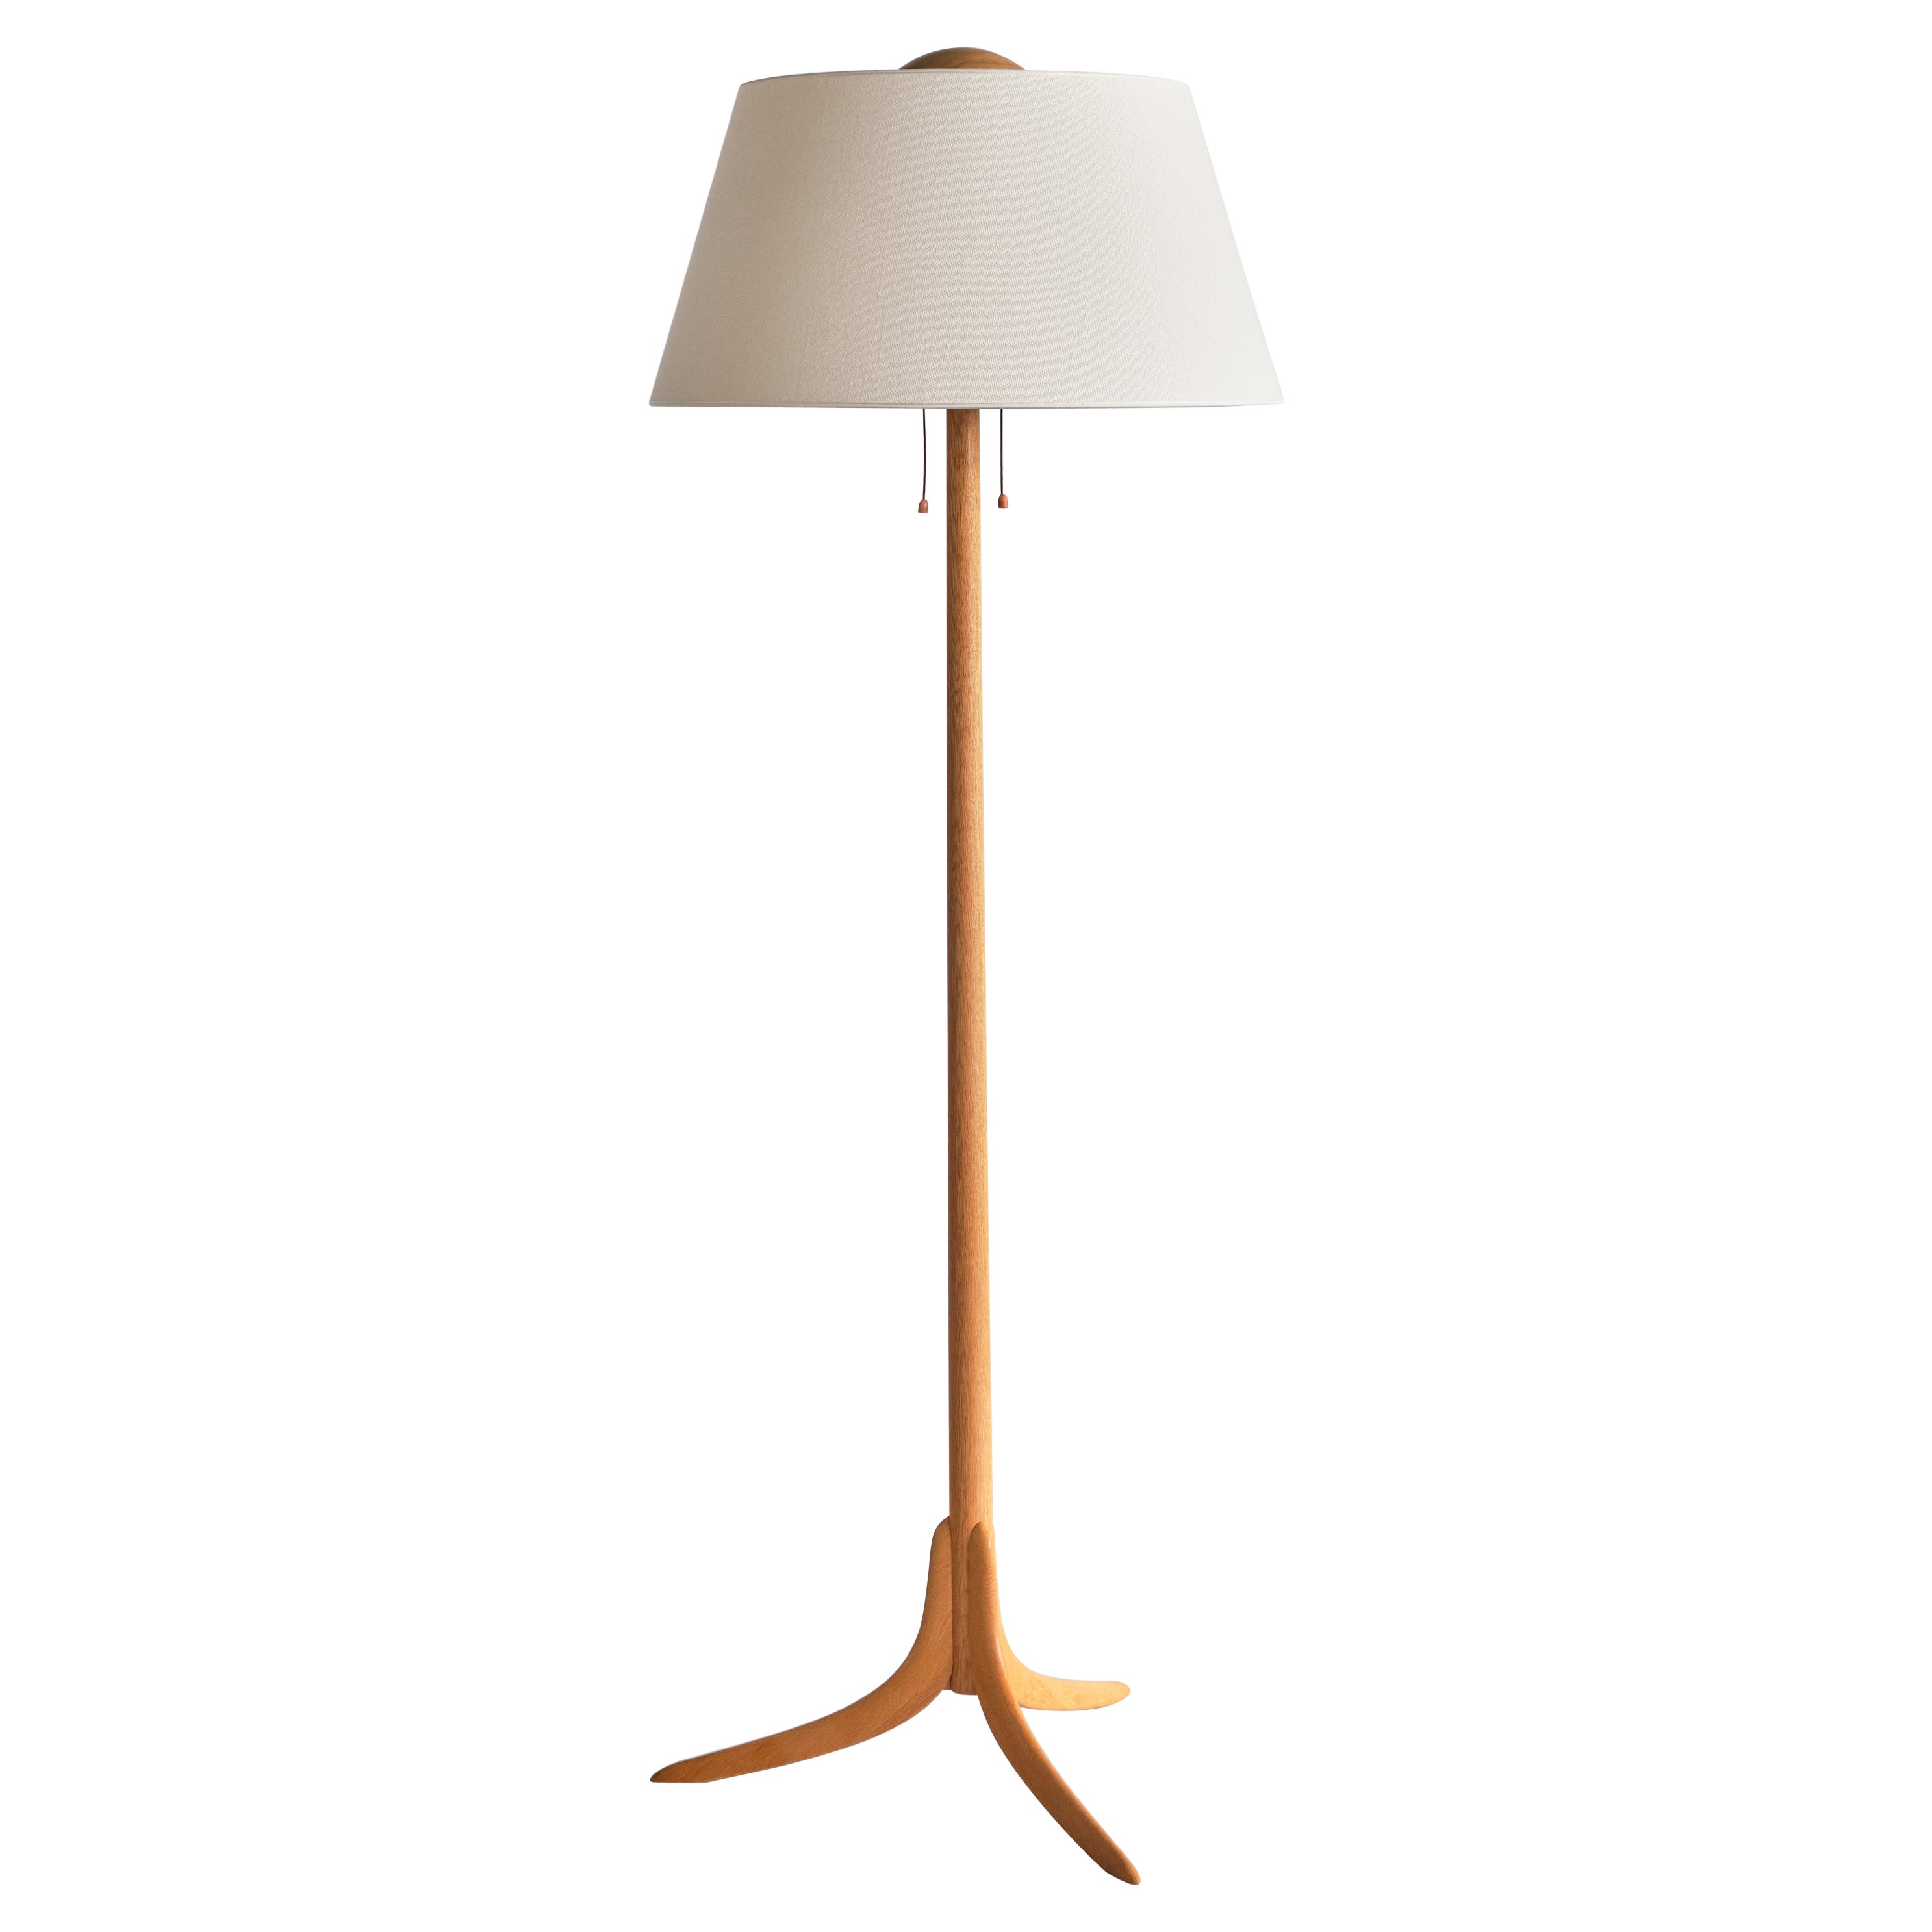 Swedish Modern Three Legged Floor Lamp in Oak, Svensk Hemslöjd, 1950s For Sale